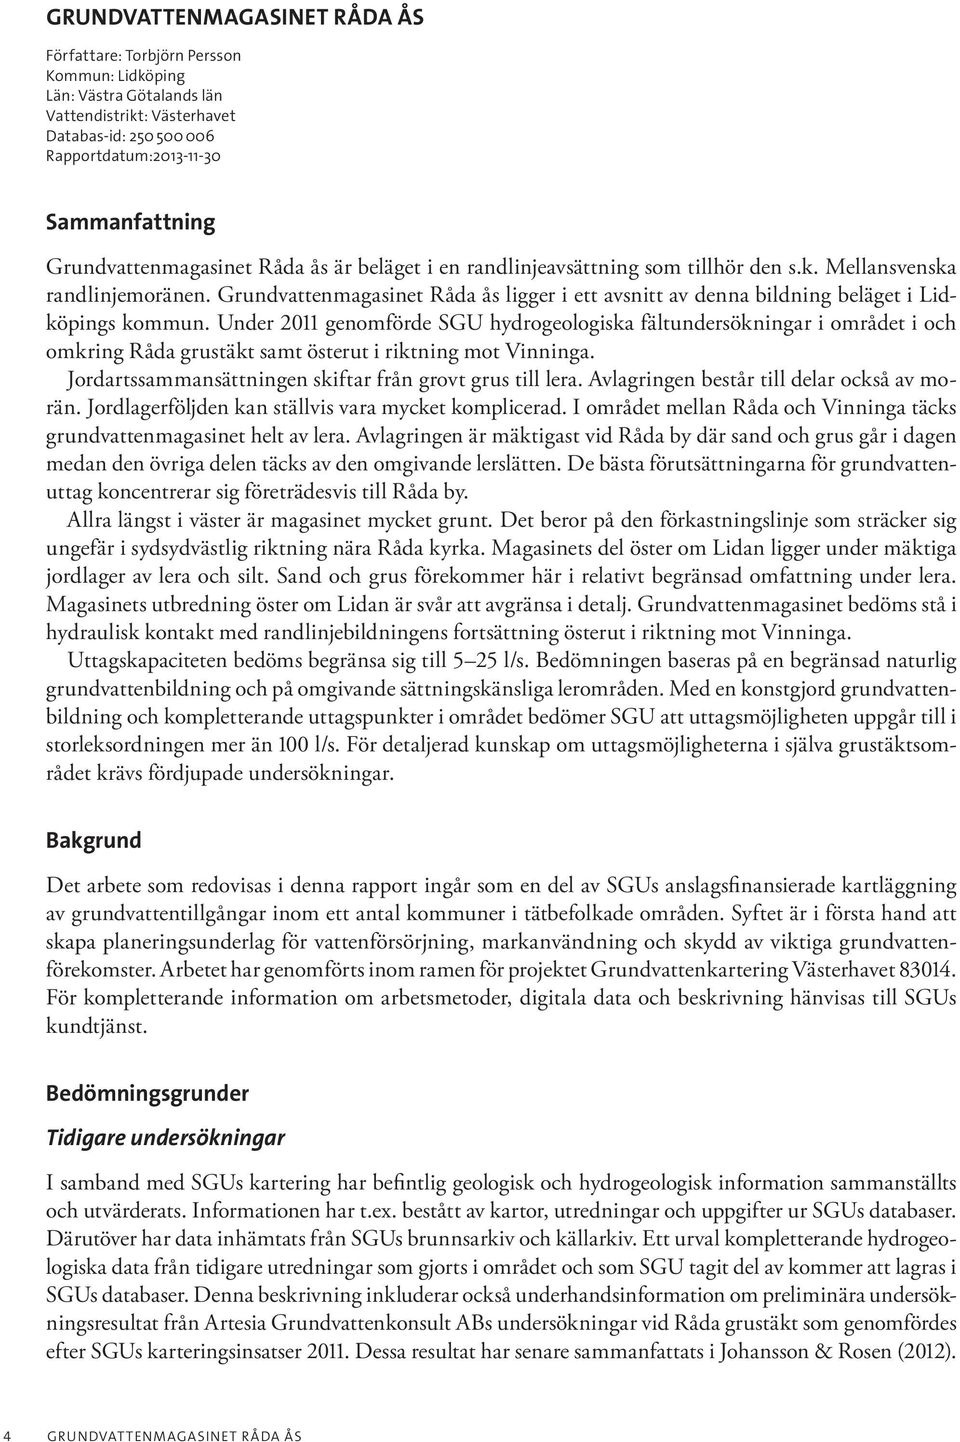 Grundvattenmagasinet Råda ås ligger i ett avsnitt av denna bildning beläget i Lidköpings kommun.